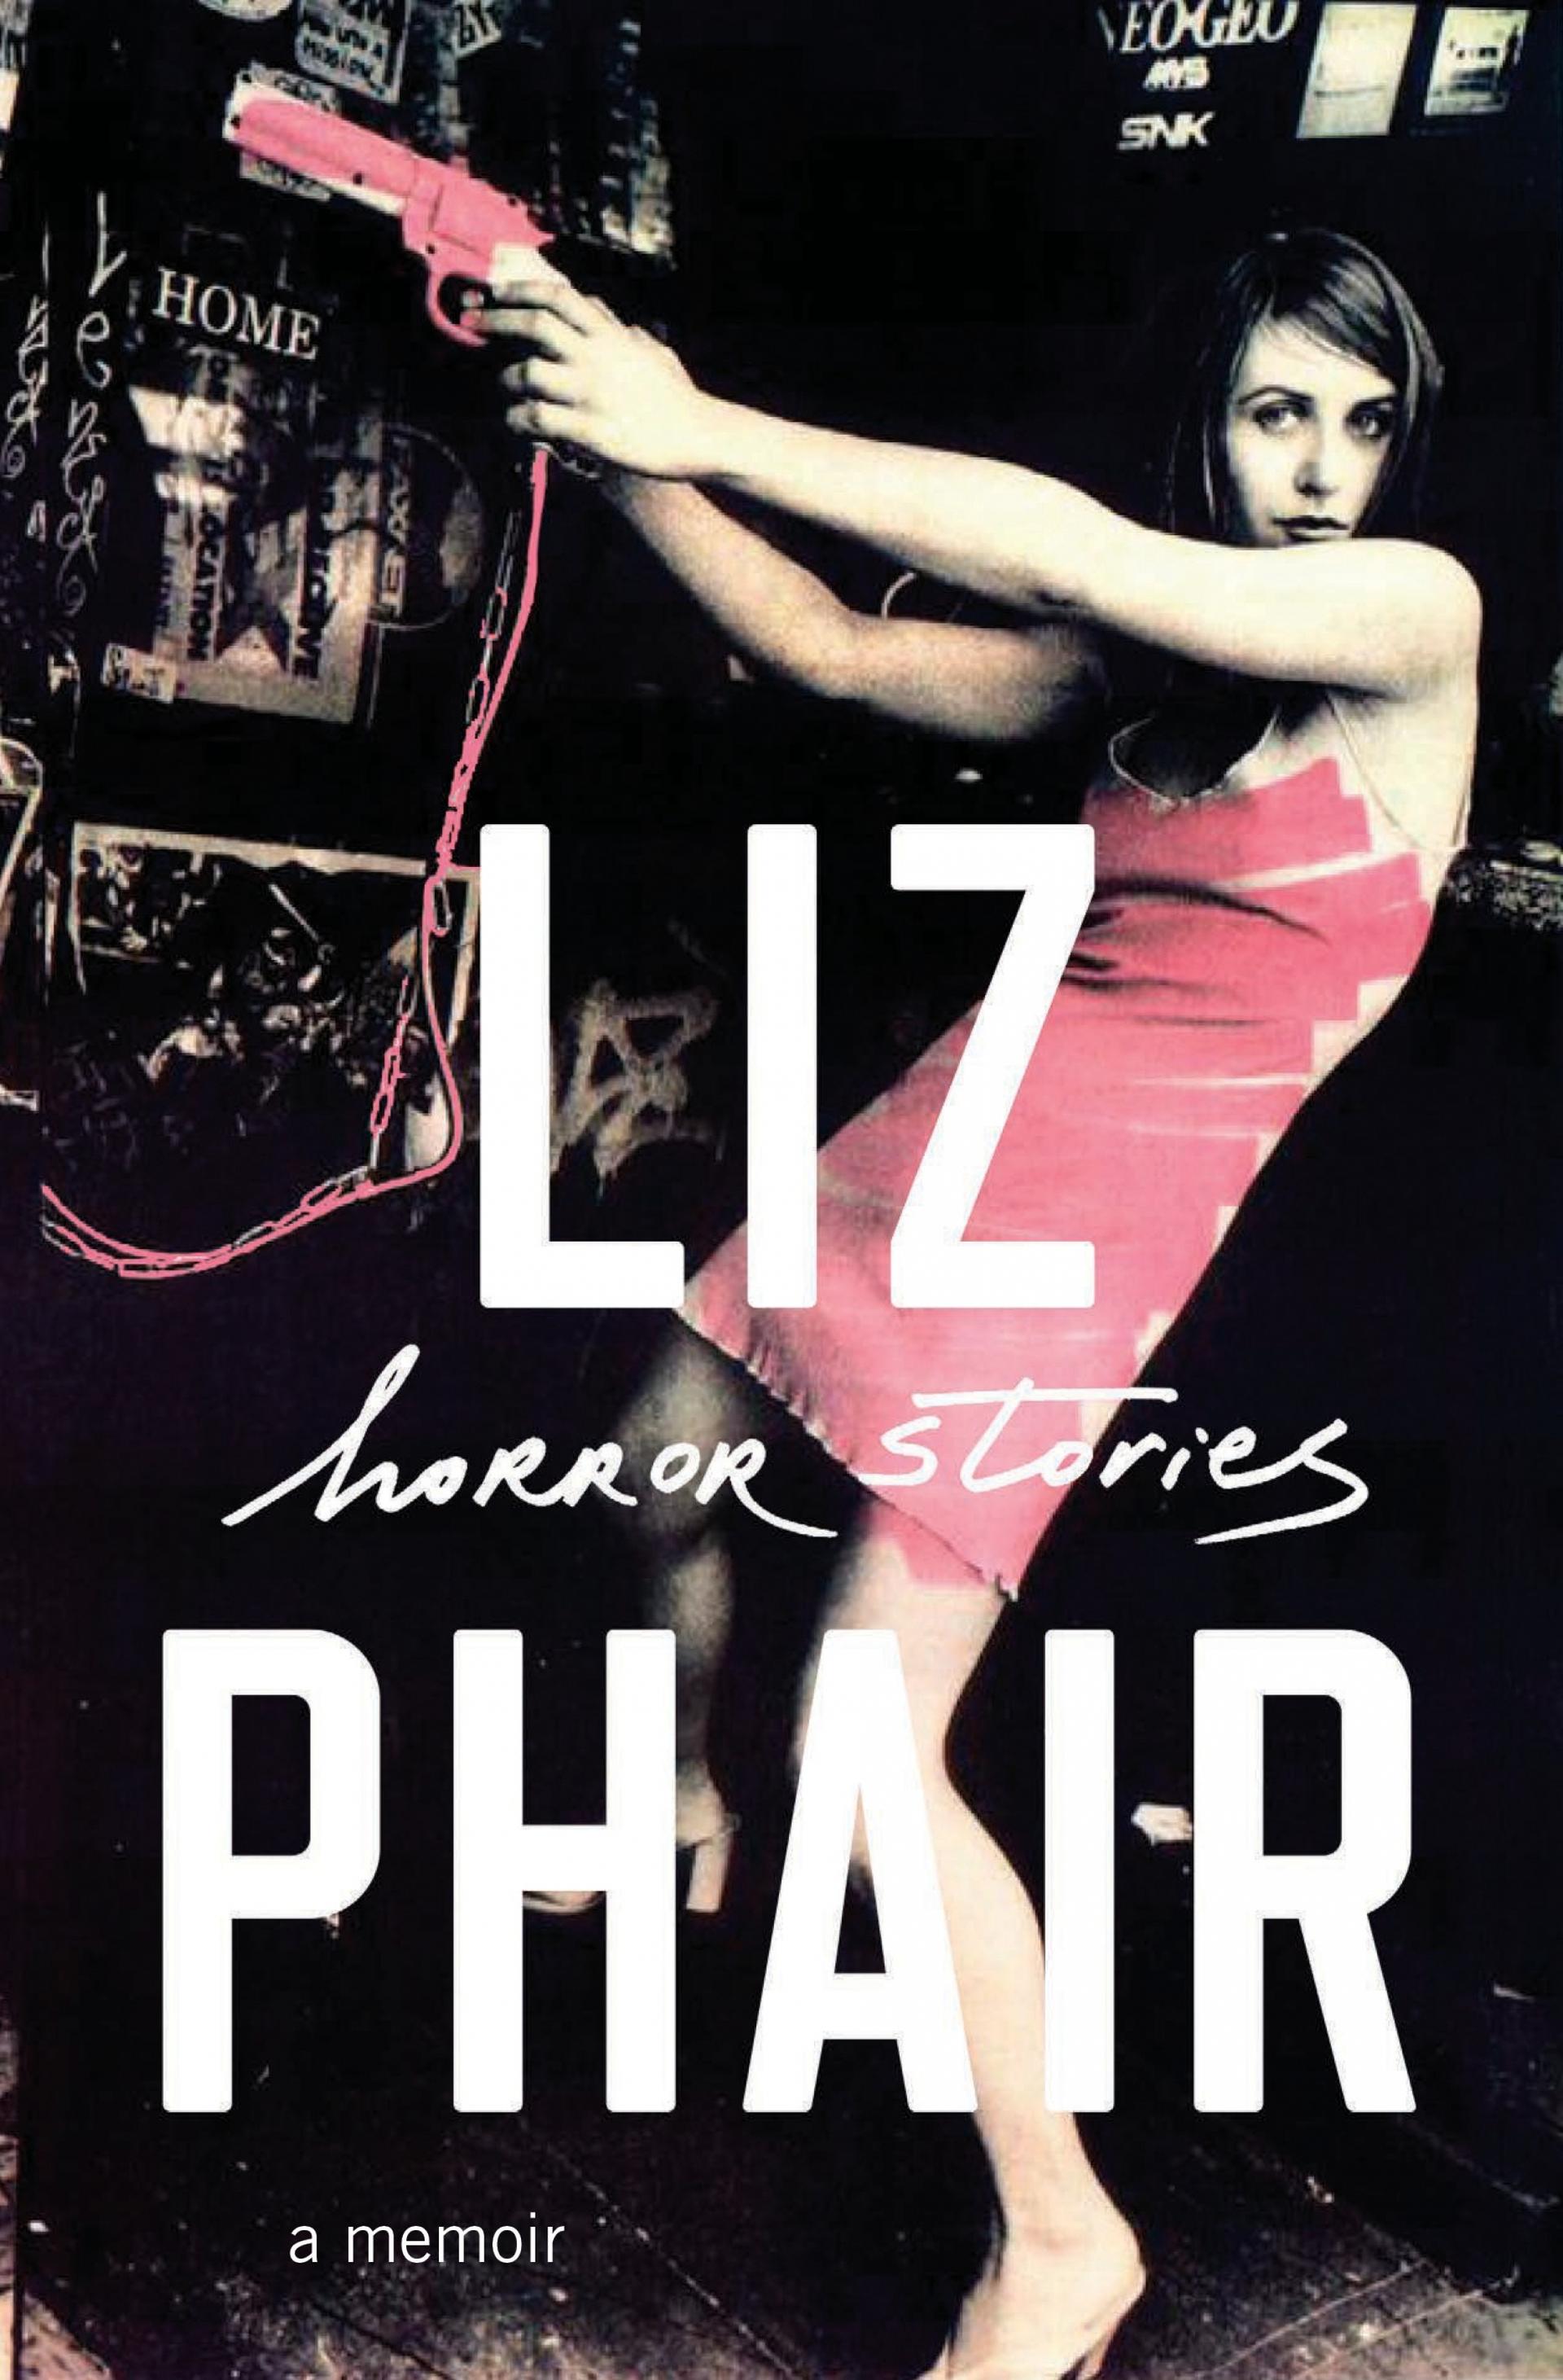 Liz Phair’s memoir “Horror Stories.”